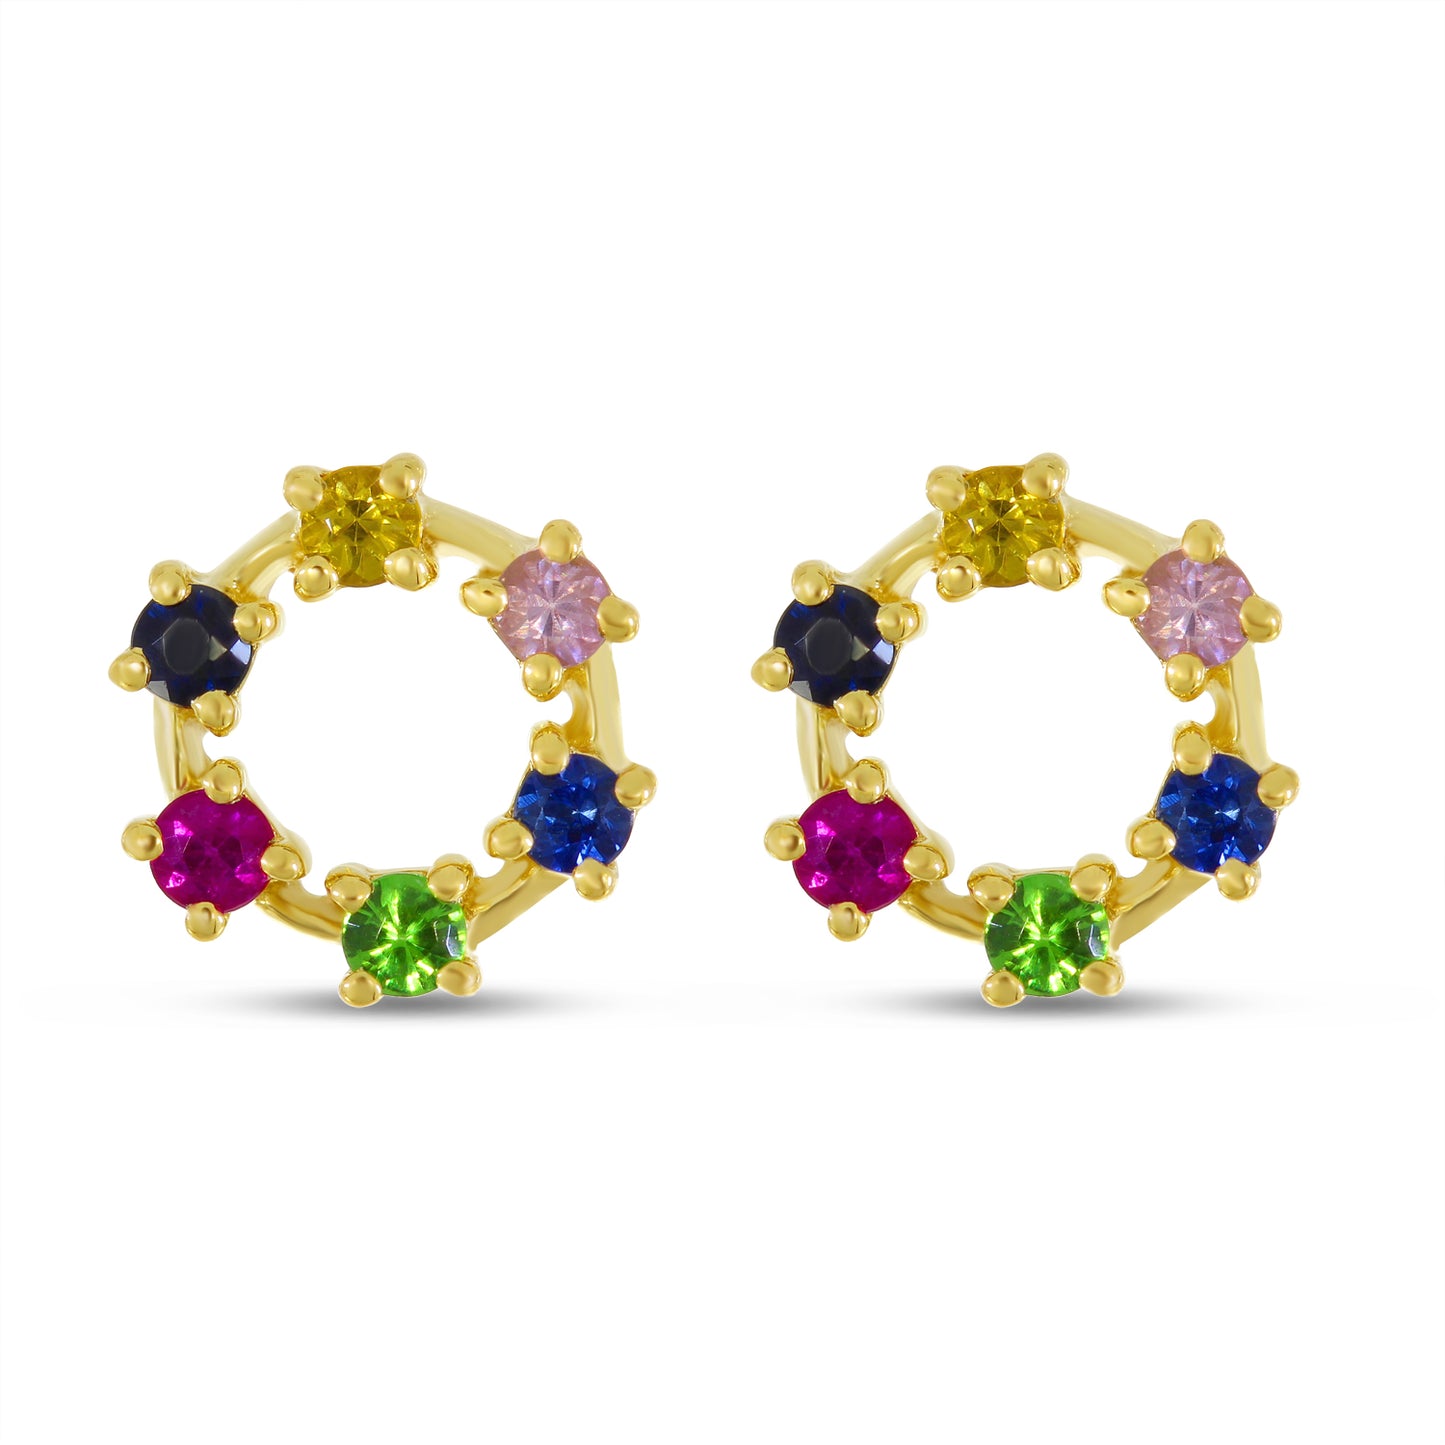 Rainbow sapphire stud earrings